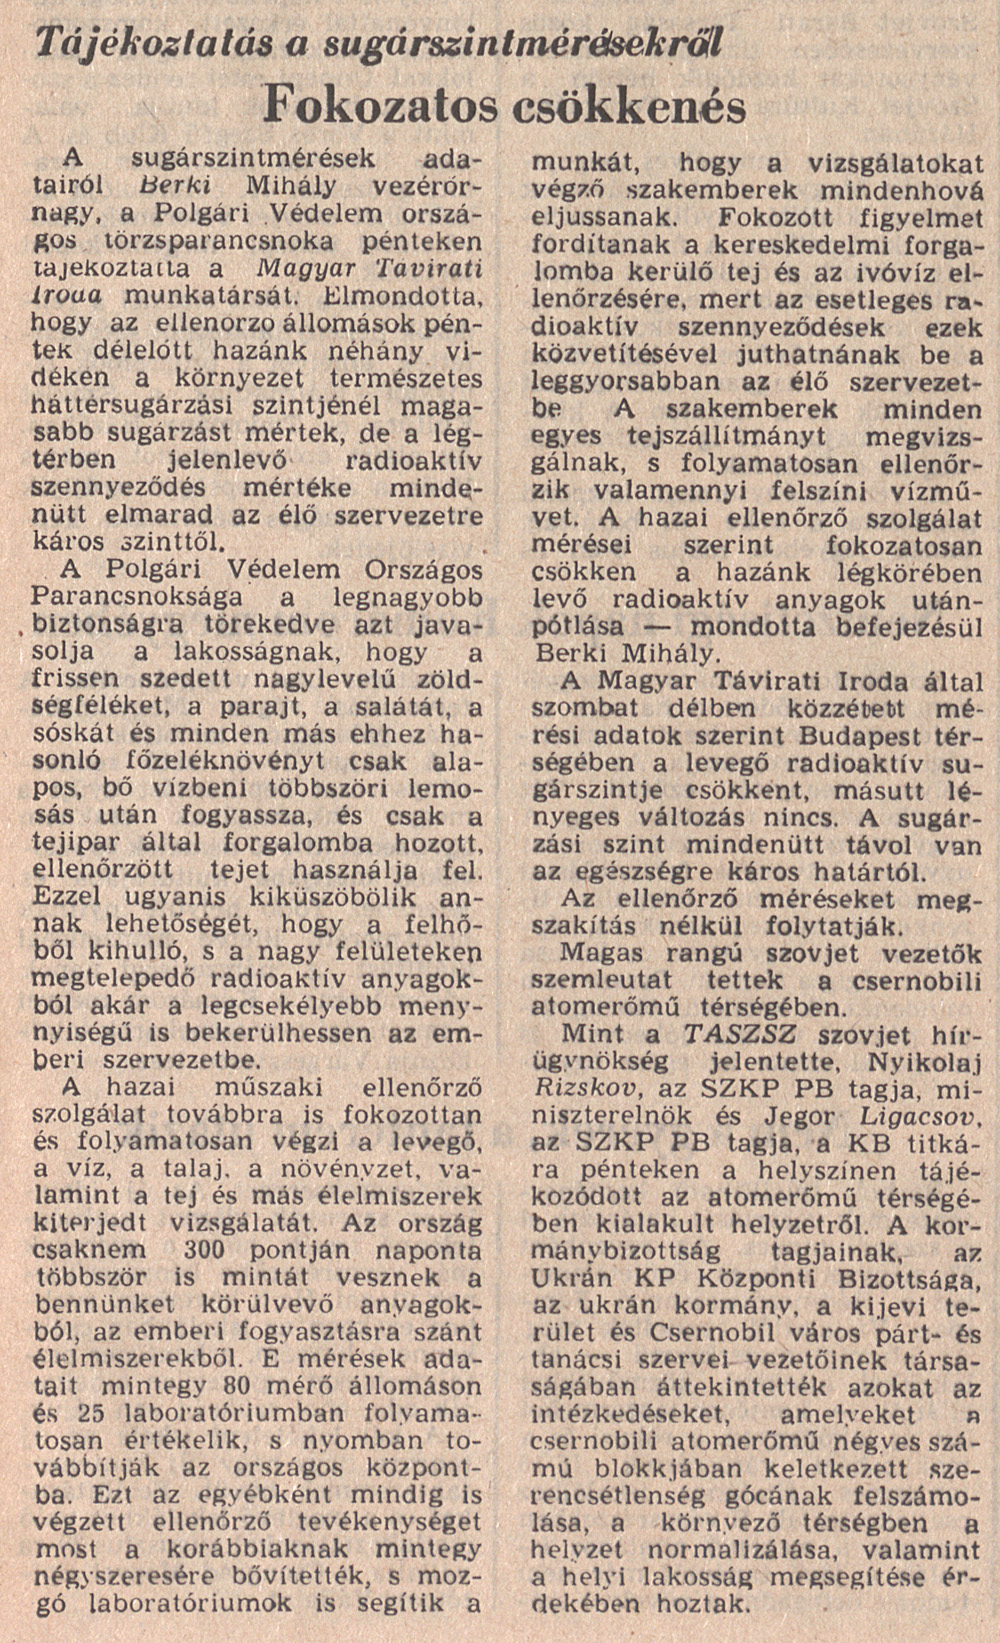 Magyar Nemzet 1986. május 4. 2. oldal. OSZK Törzsgyűjtemény